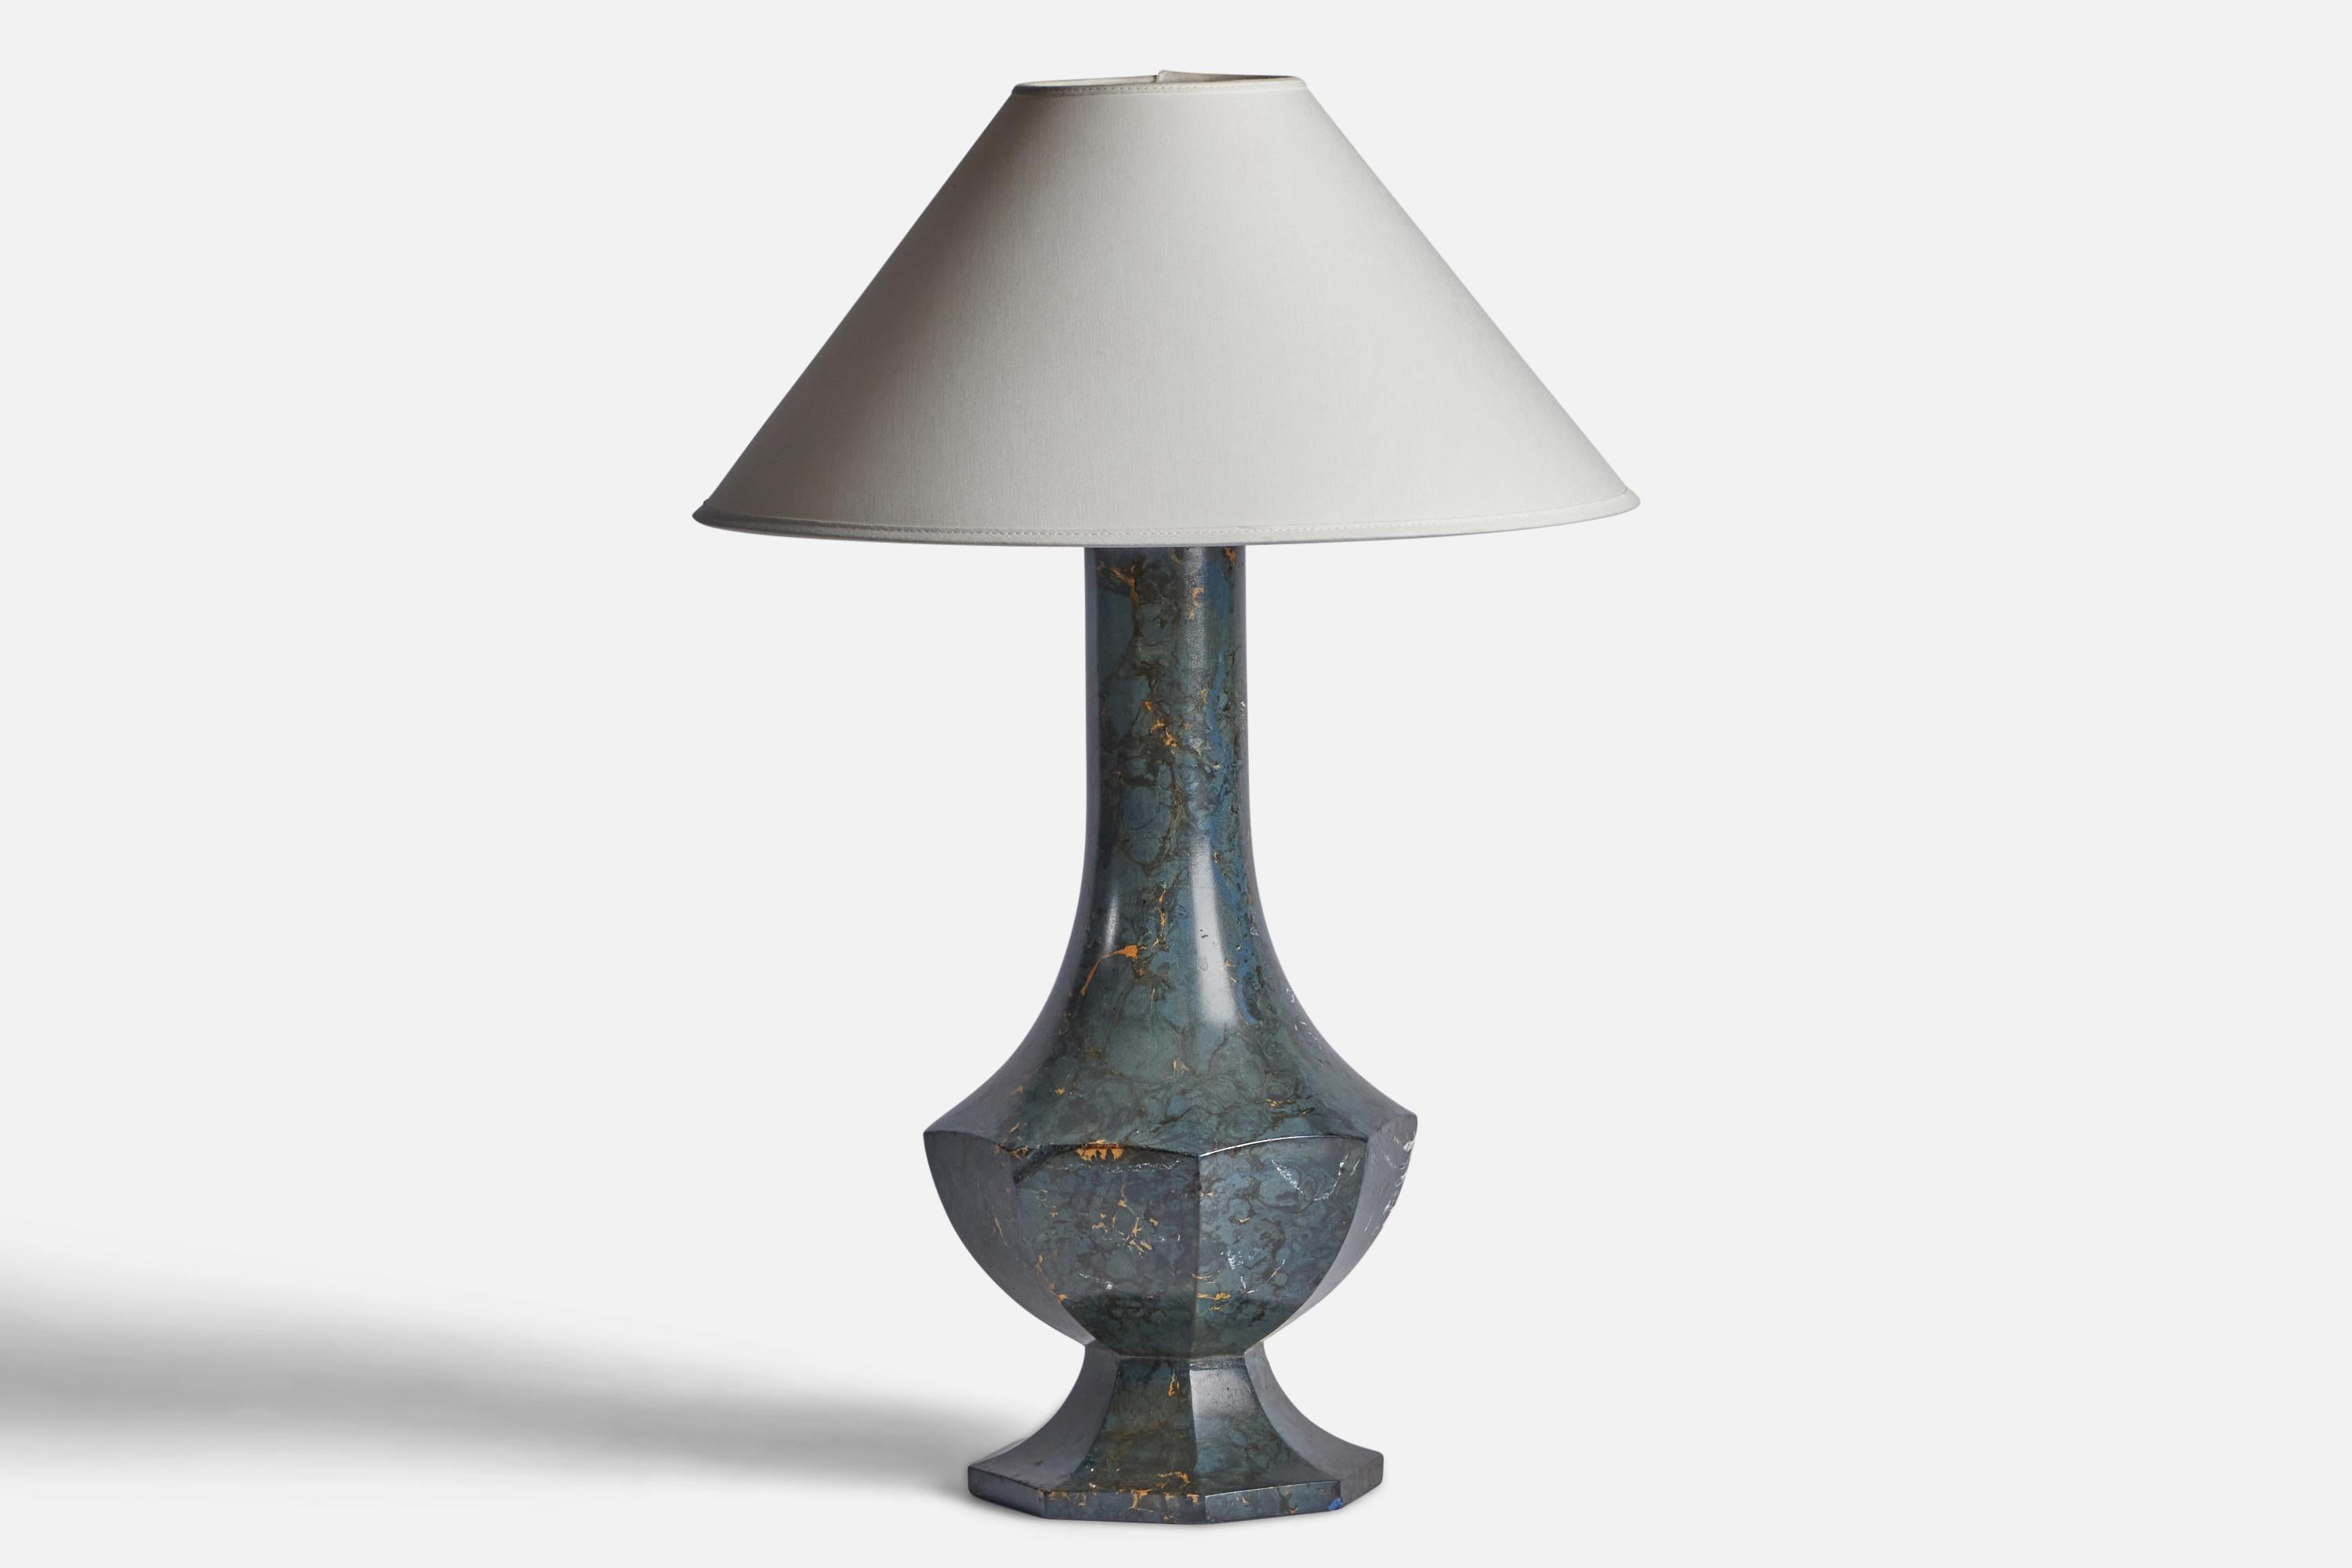 Lampe de table en céramique émaillée bleue, conçue et produite en Suède, C.C. 1920.

Dimensions de la lampe (pouces) : 19